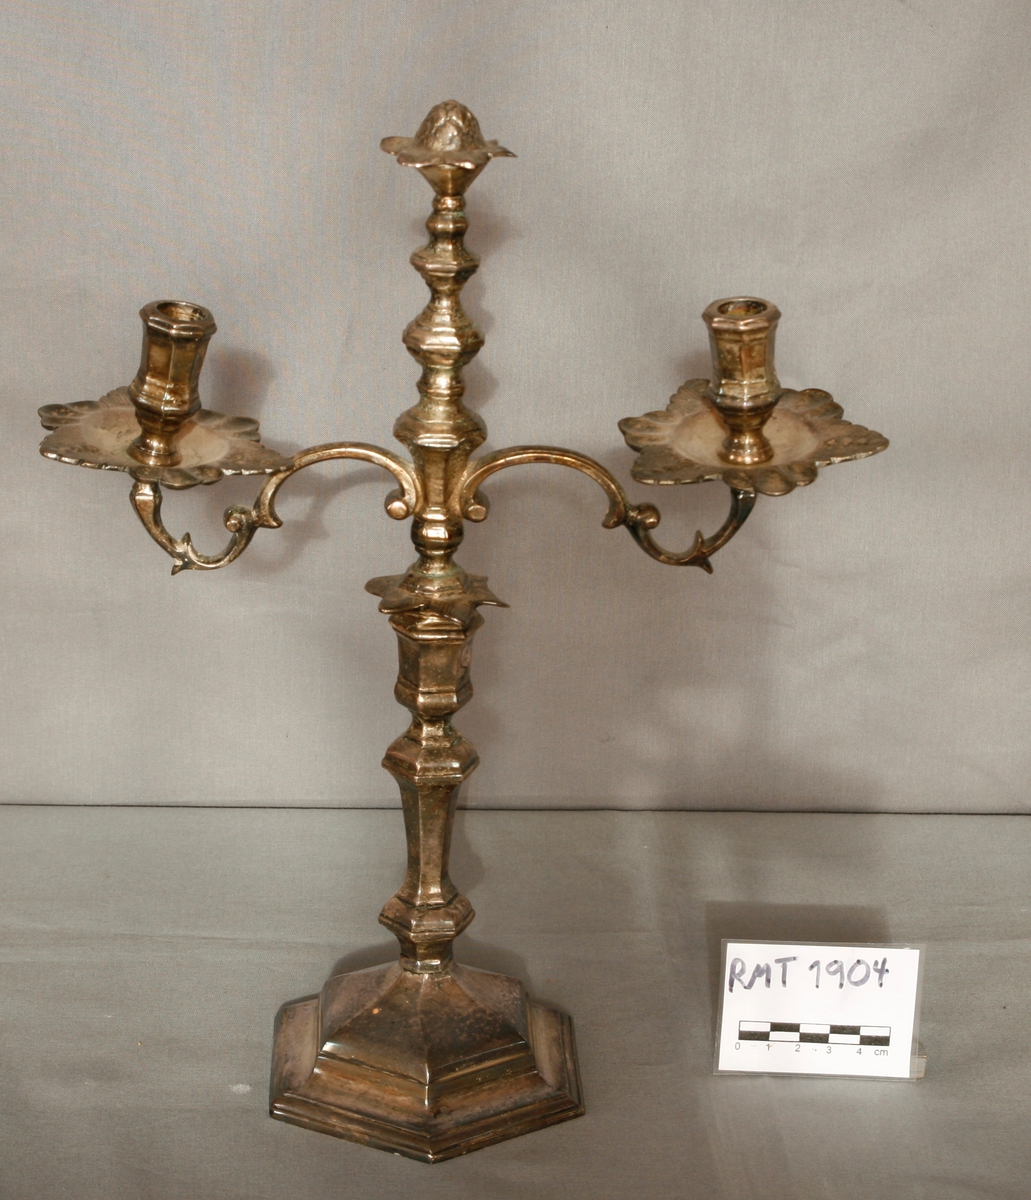 Toarmet stake med holdere til to lys. I midten en blomsterknopp. Kopi av lysestake i sølv. (Originalen er fra ca. 1710.)